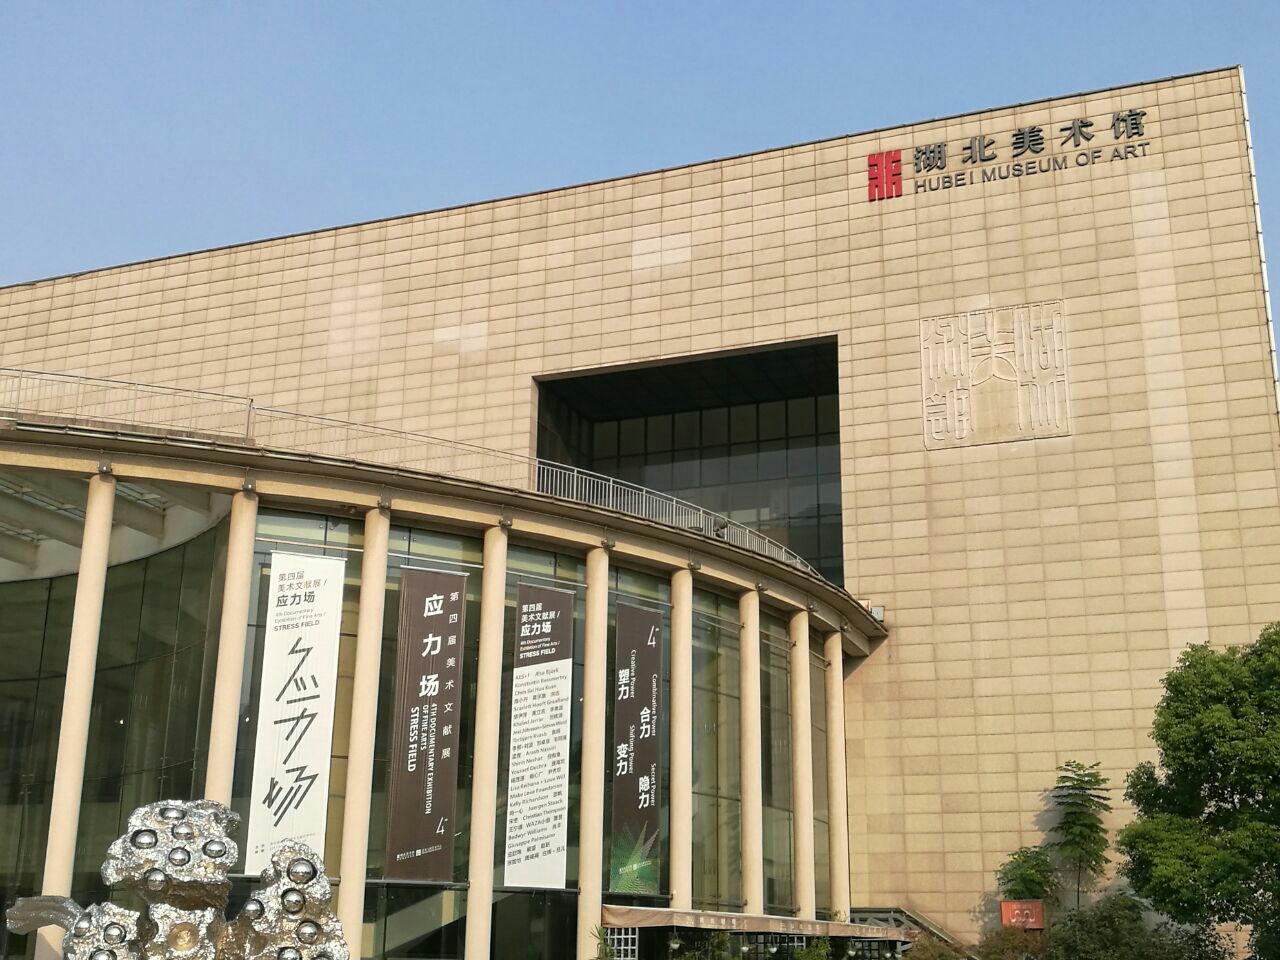 湖北省美术馆位于东湖风景区附近,就在湖北省博物馆的旁边,免费开放